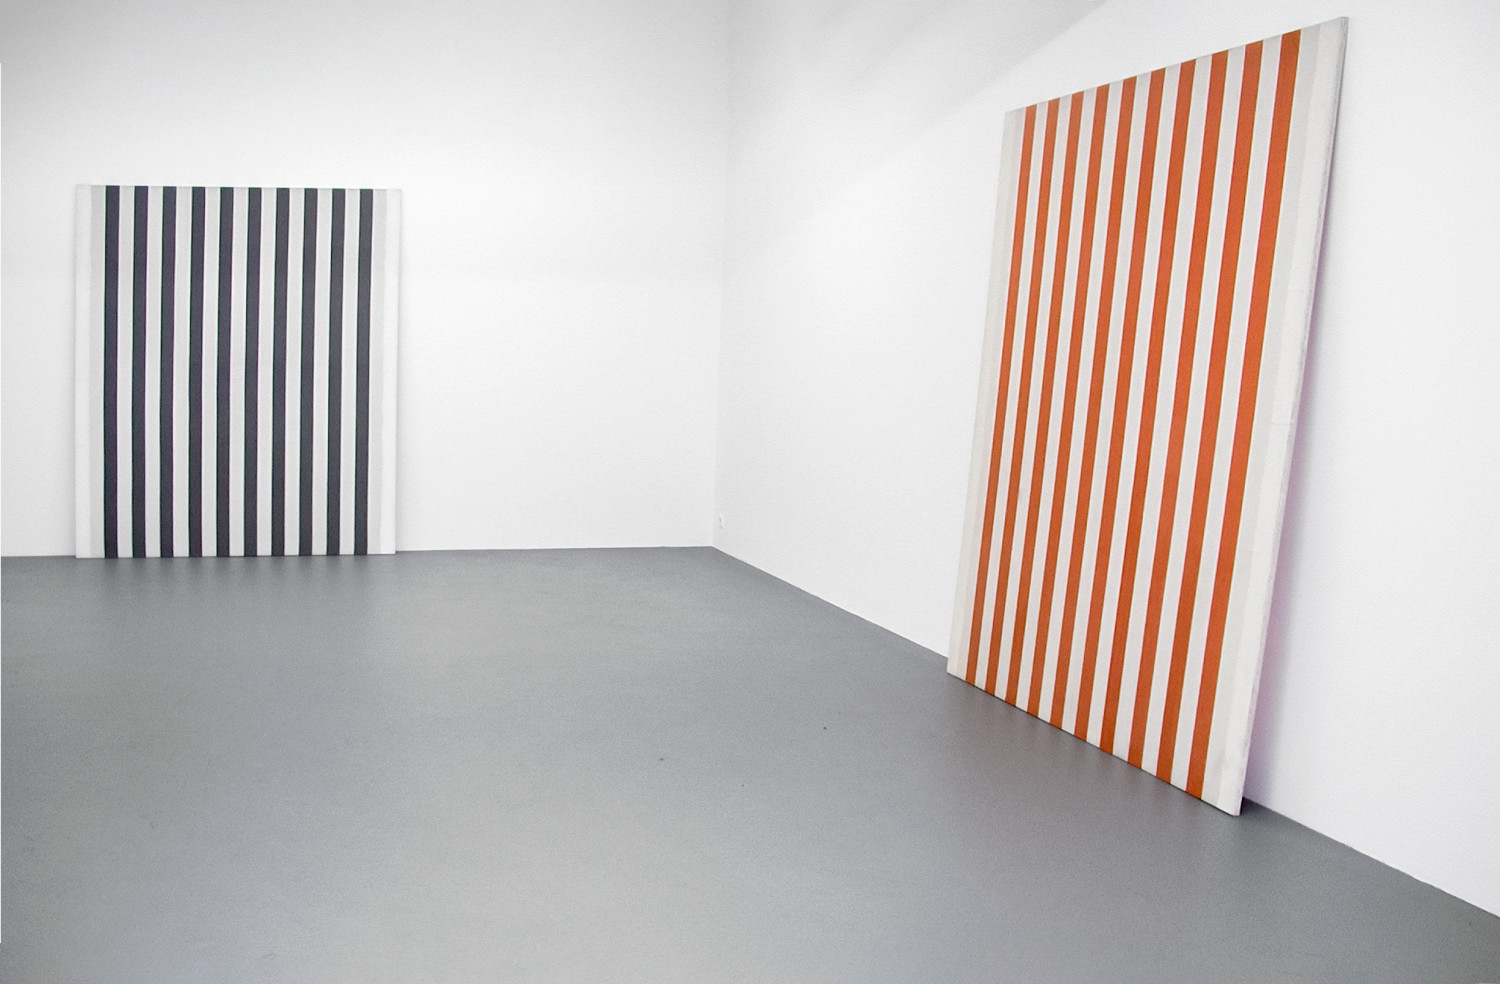 Daniel Buren, ‘Peinture blanche 1965 - 1966’, 2002